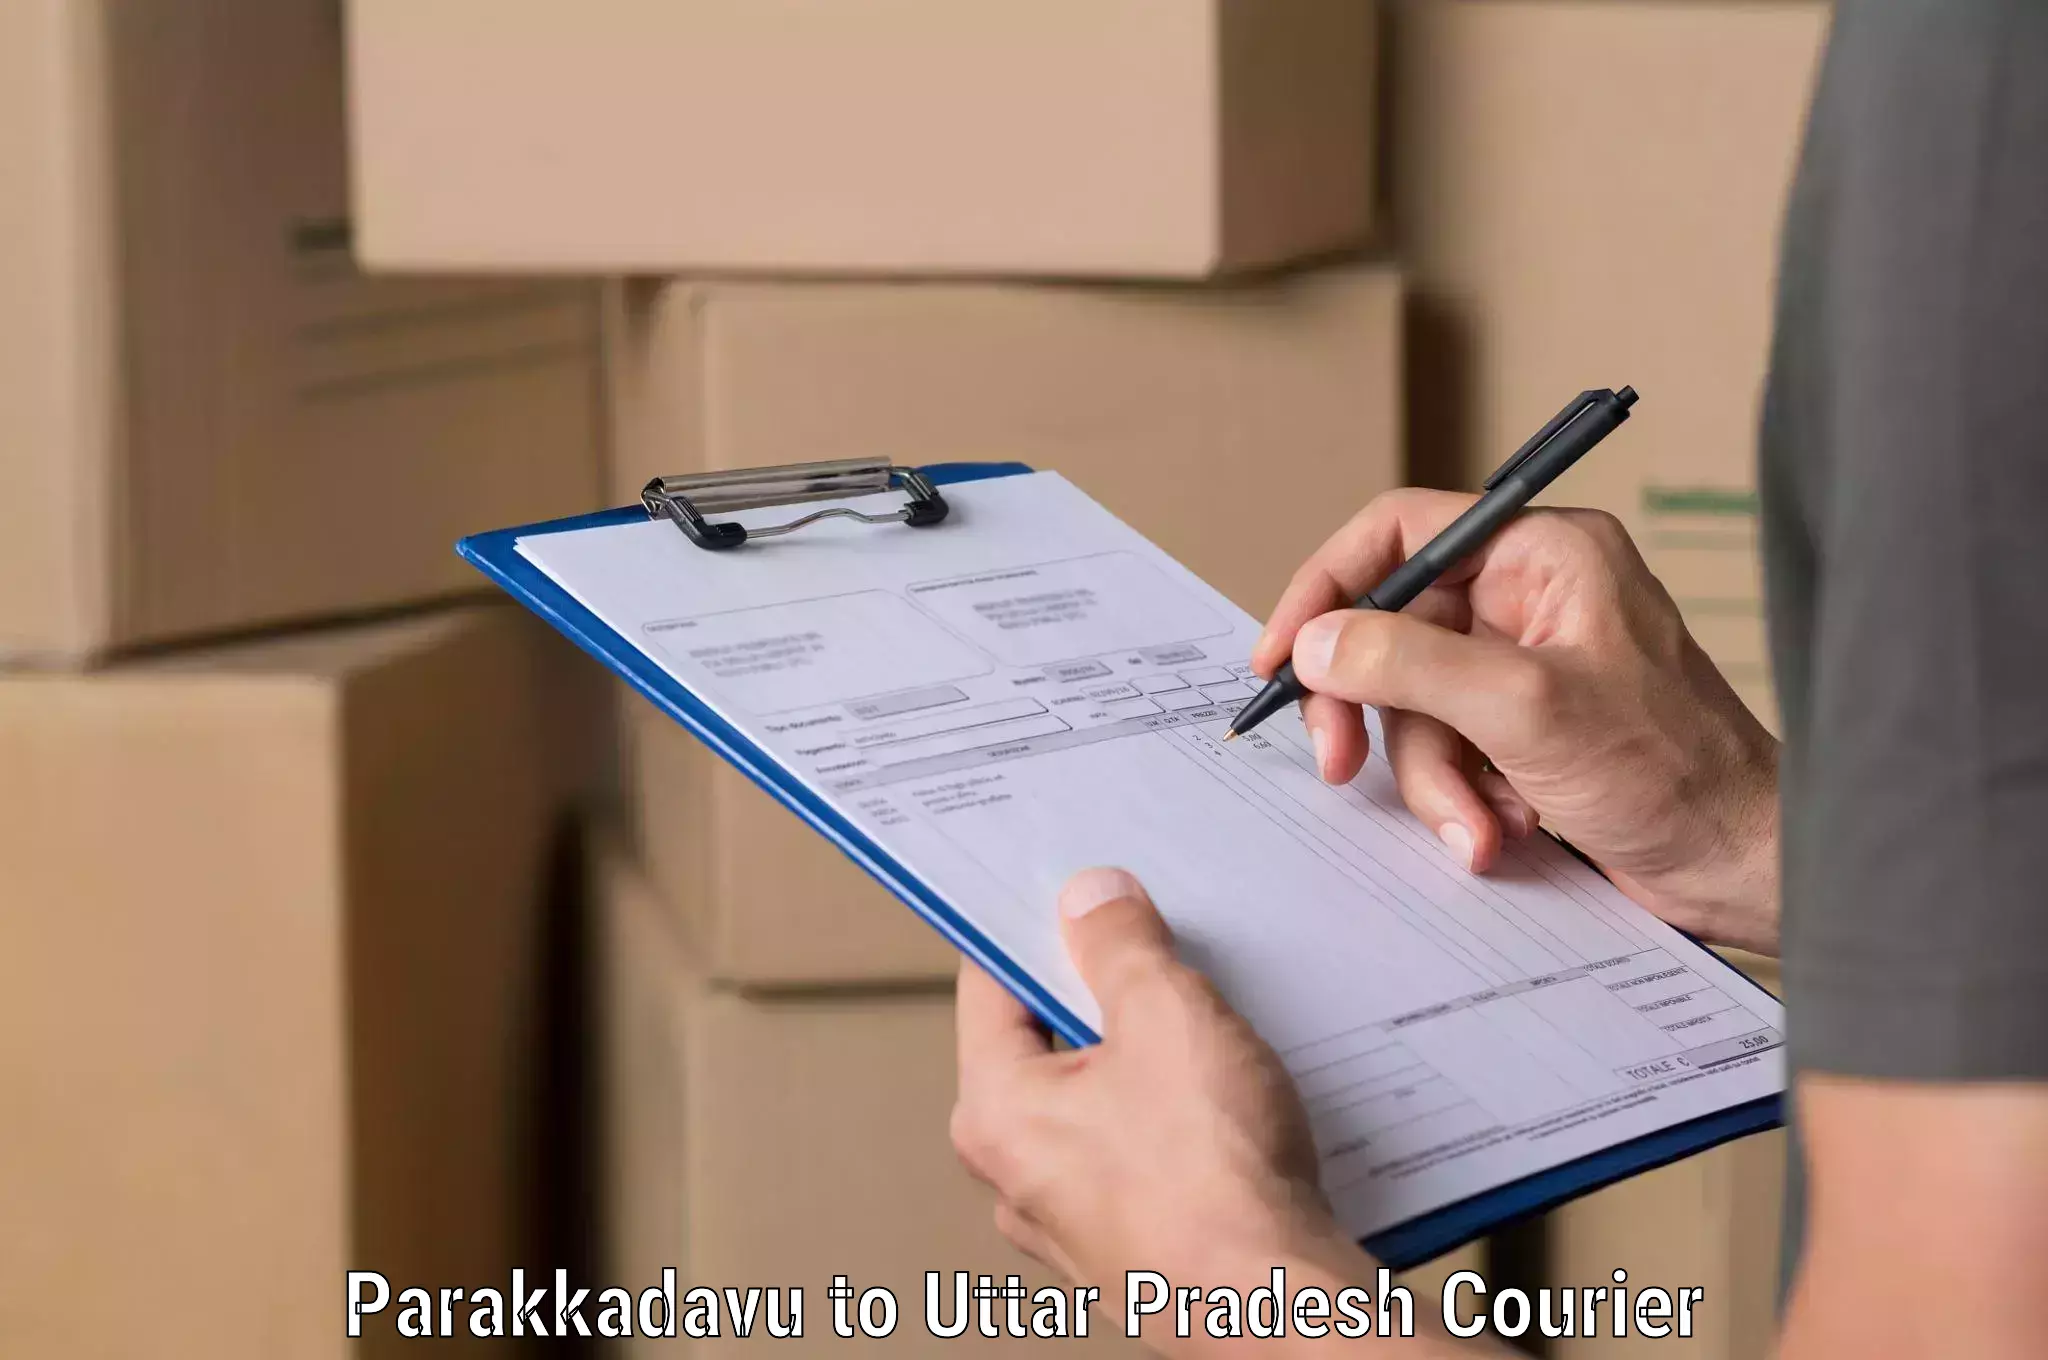 Domestic courier Parakkadavu to Afzalgarh